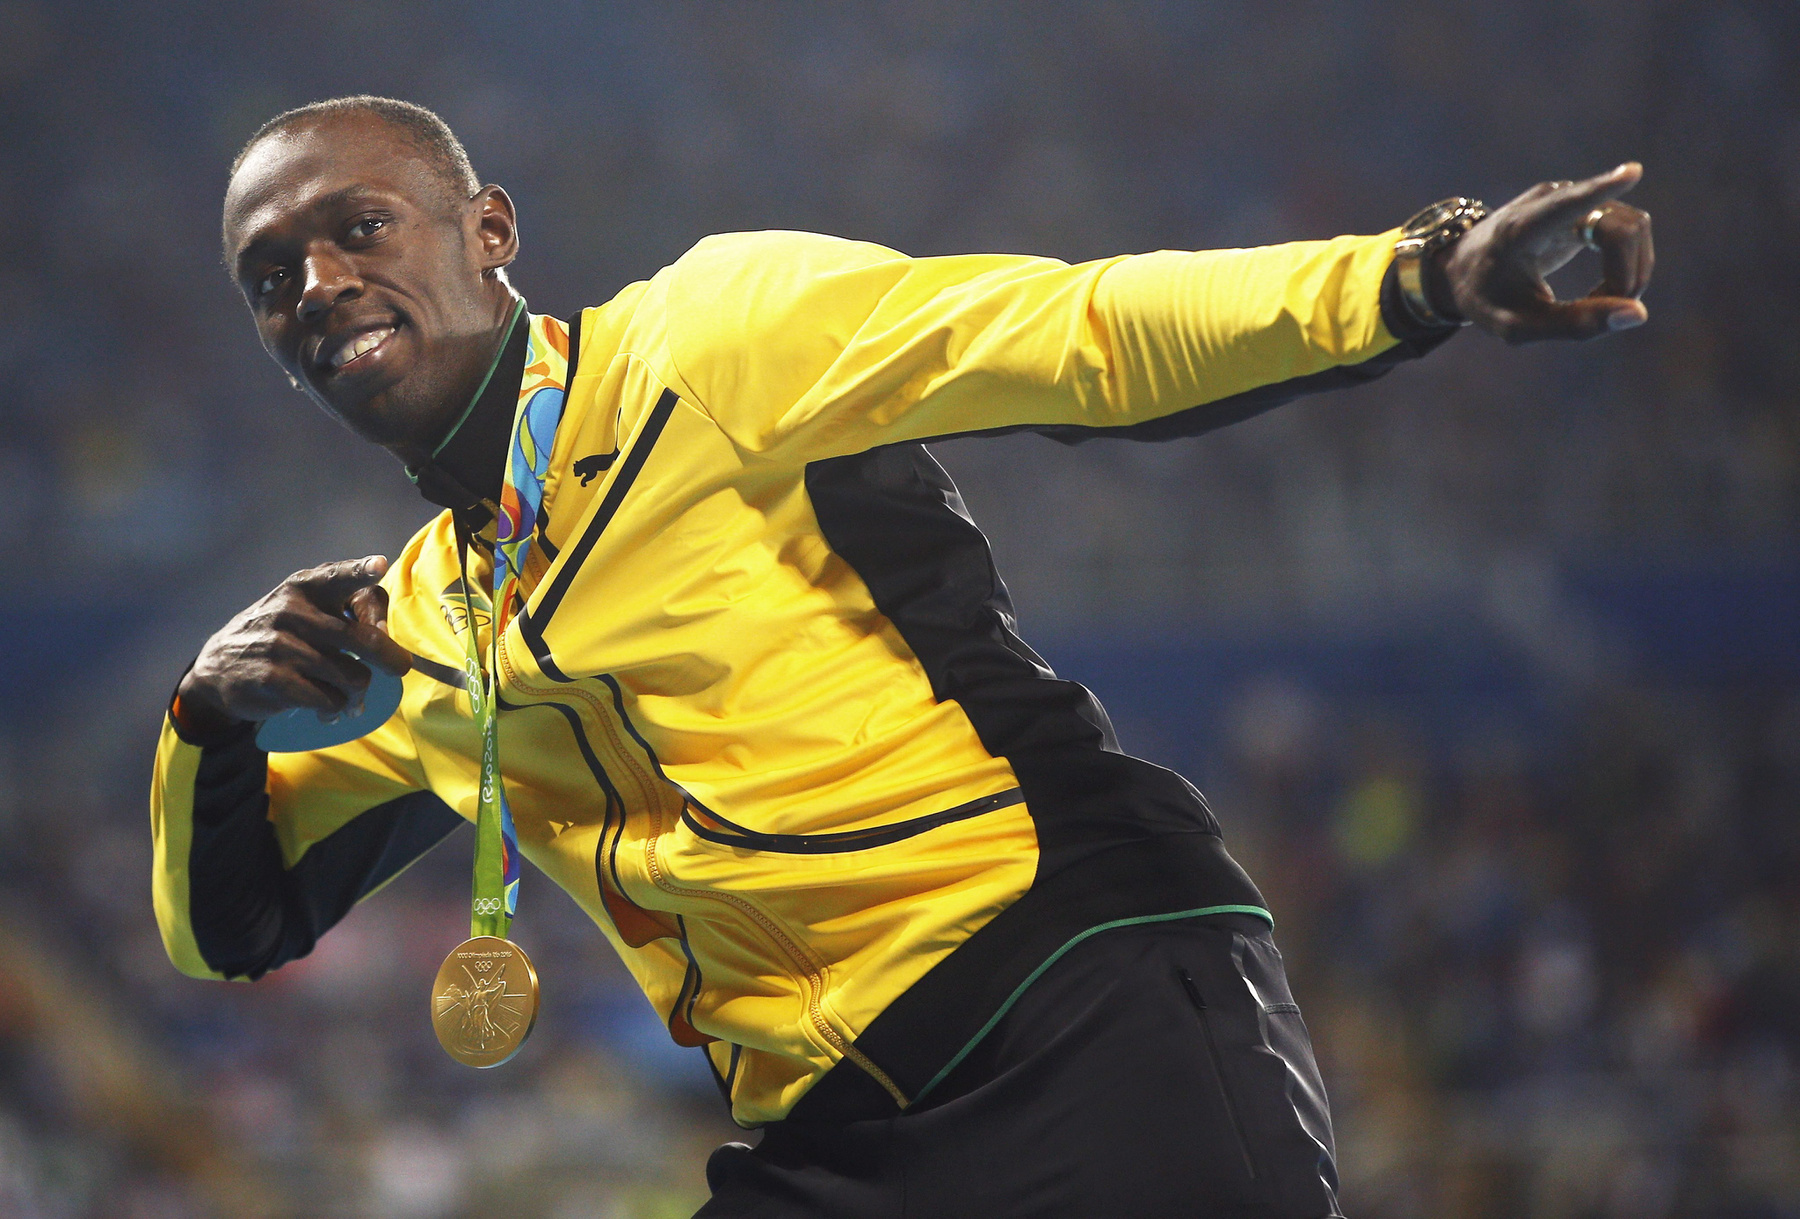 David Katoatau két évvel ezelőtt a Nemzetközösségi Játékokon lett ismert, amikor a 105 kilója ellenére óvódásnak kinéző súlyemelő túlmozgásos tánccal ünnepelte az érmét. Azóta nagyjából úgy is maradt, táncolt az olimpia faluban a kiribati zászló felhúzásakor az olimpia faluban, zászlóvivőként a megnyitón, és most a súlyemelő versenye végén is.